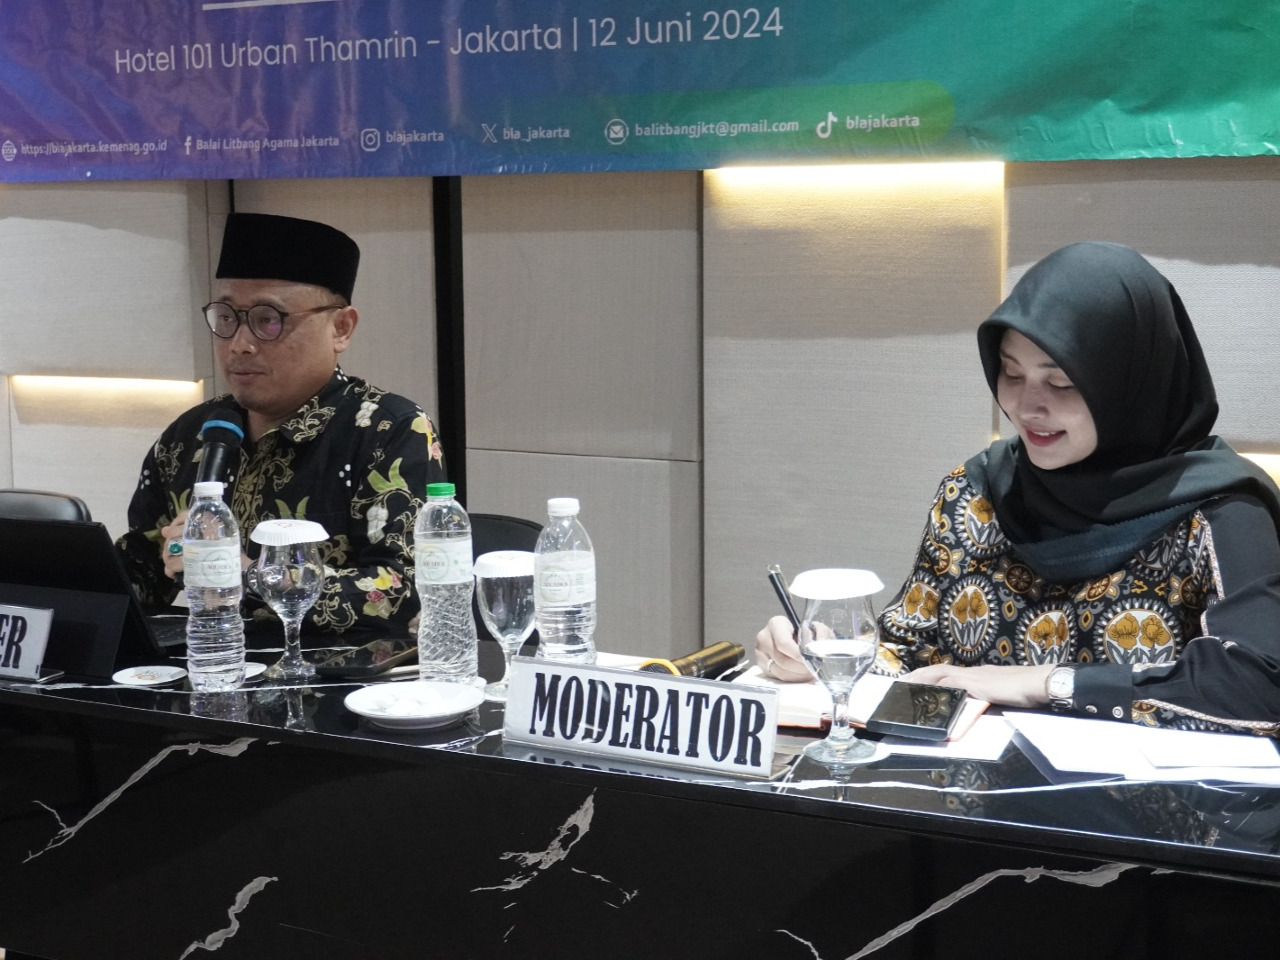 Pengaruh Konten Negatif bagi Siswa Madrasah, Apa Kata BLA Jakarta?